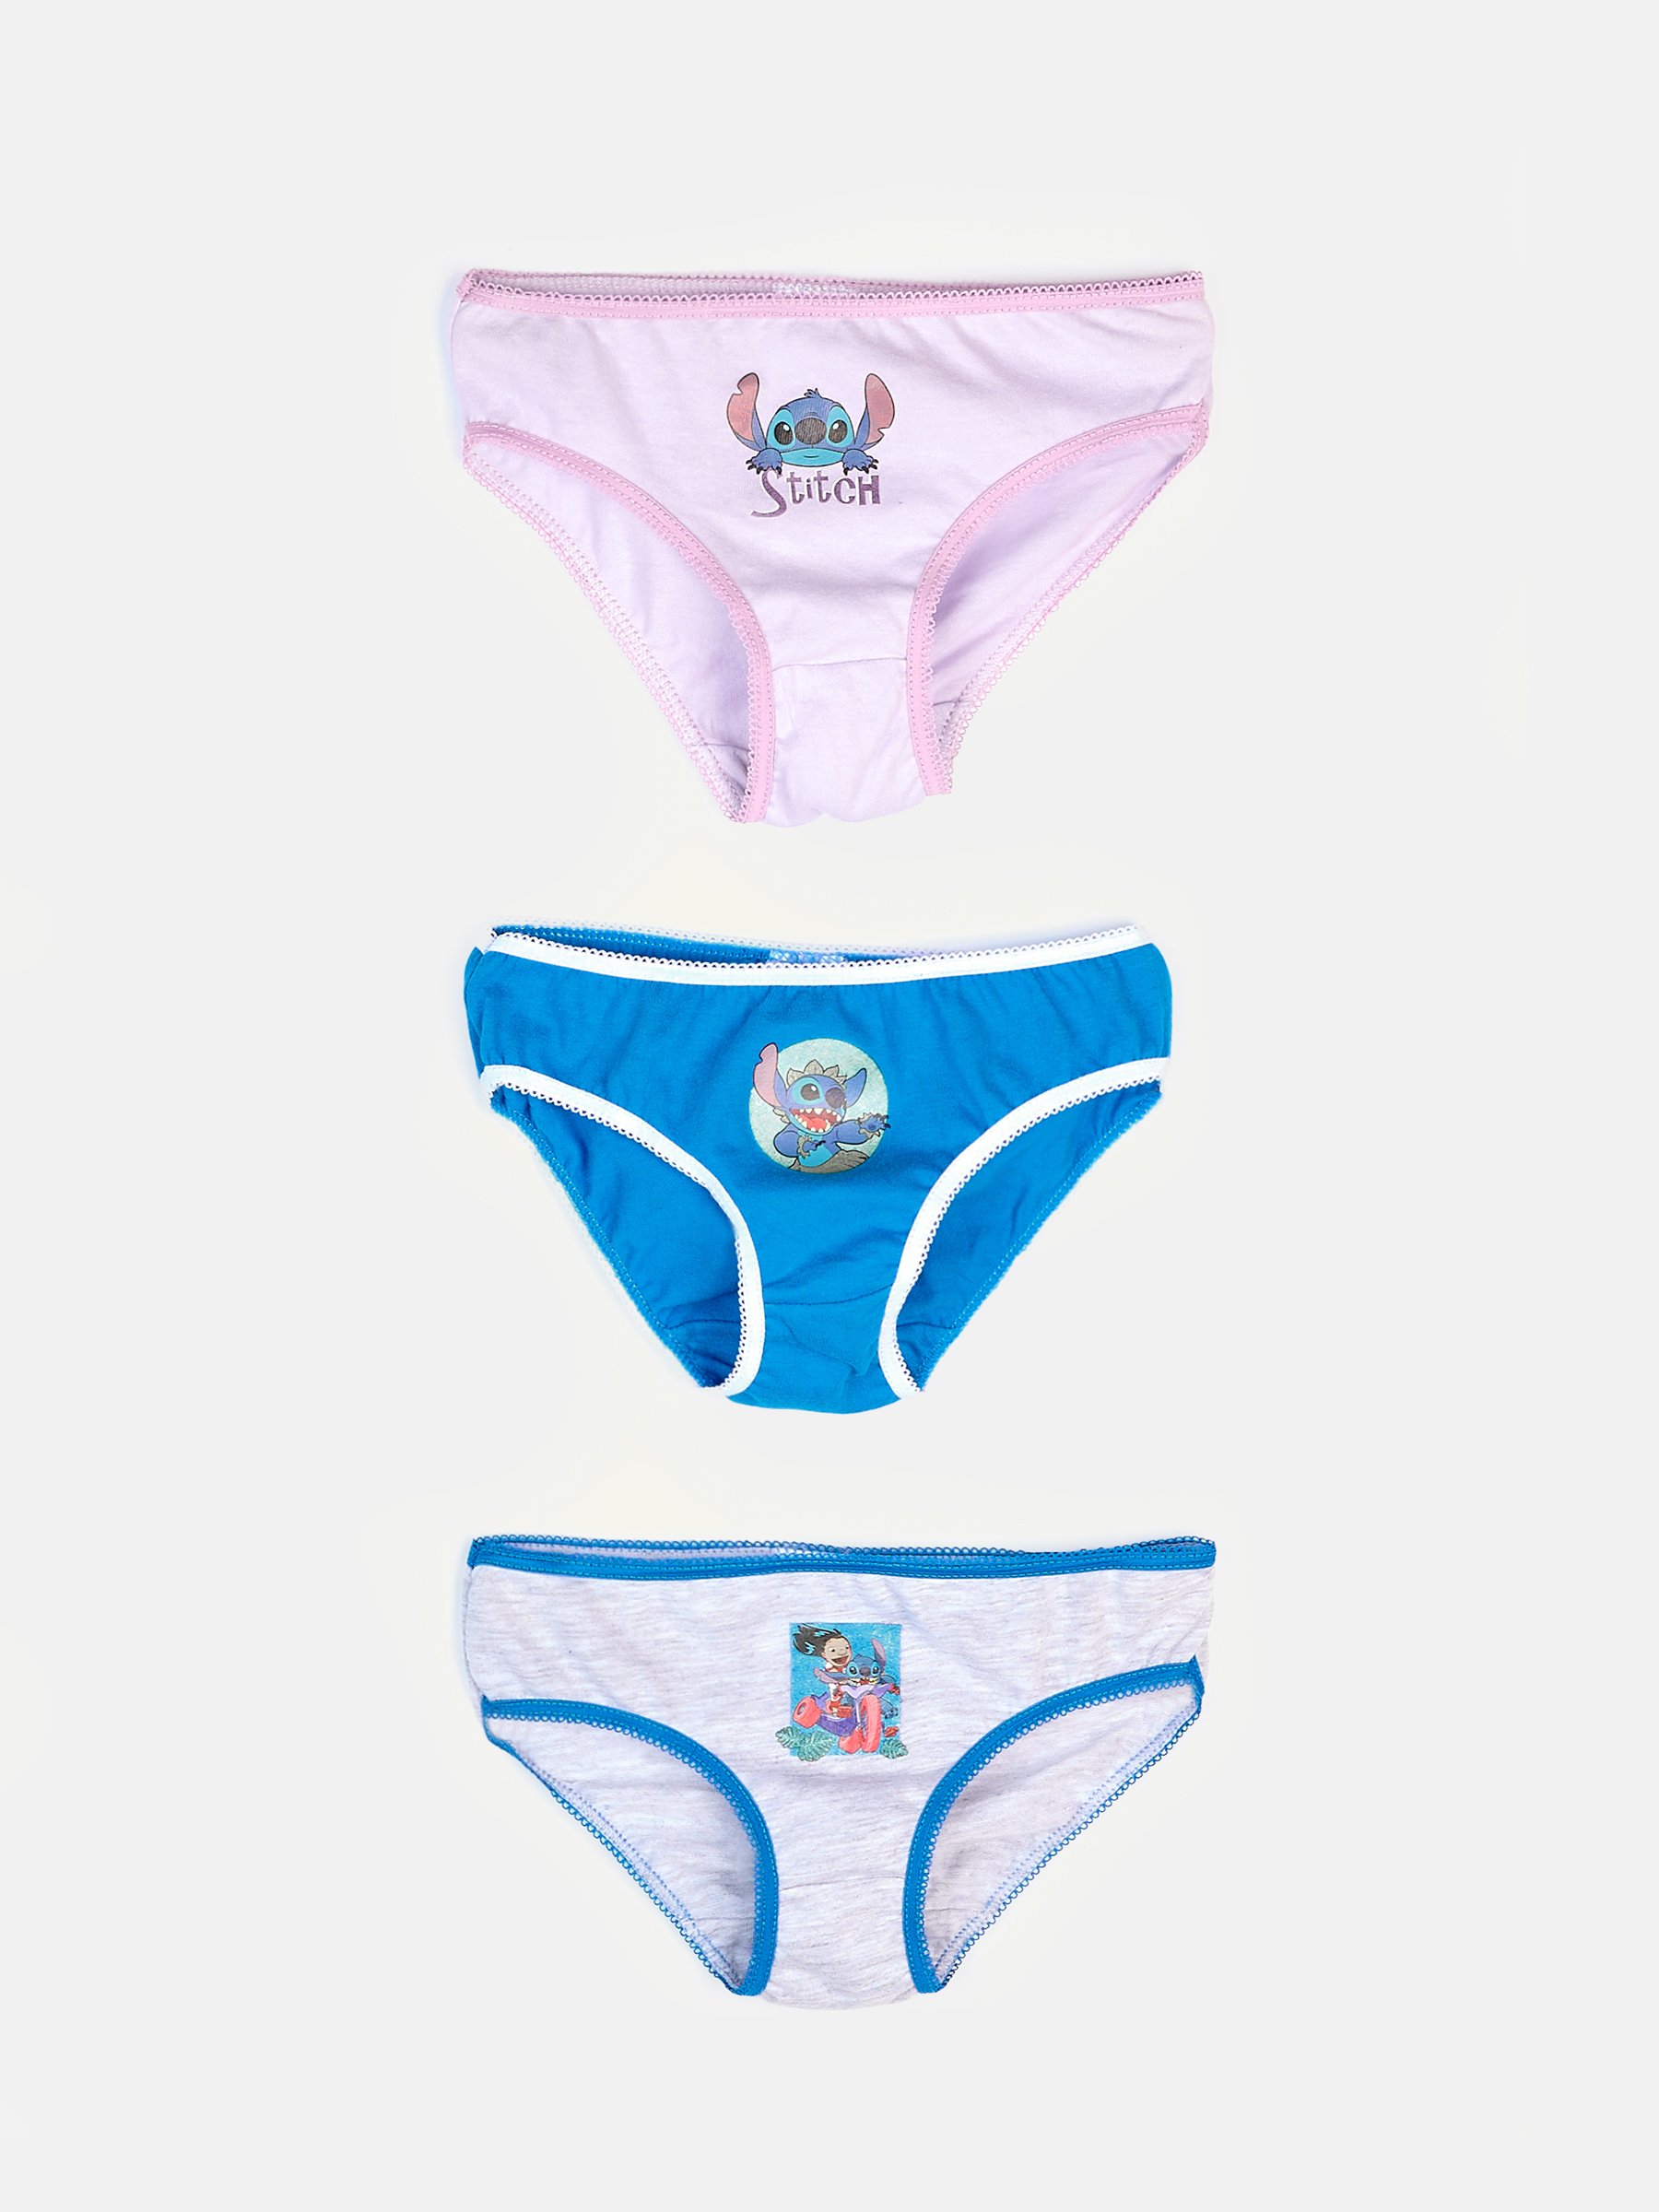  Girls' Underwear - Stitch / Girls' Underwear / Girls